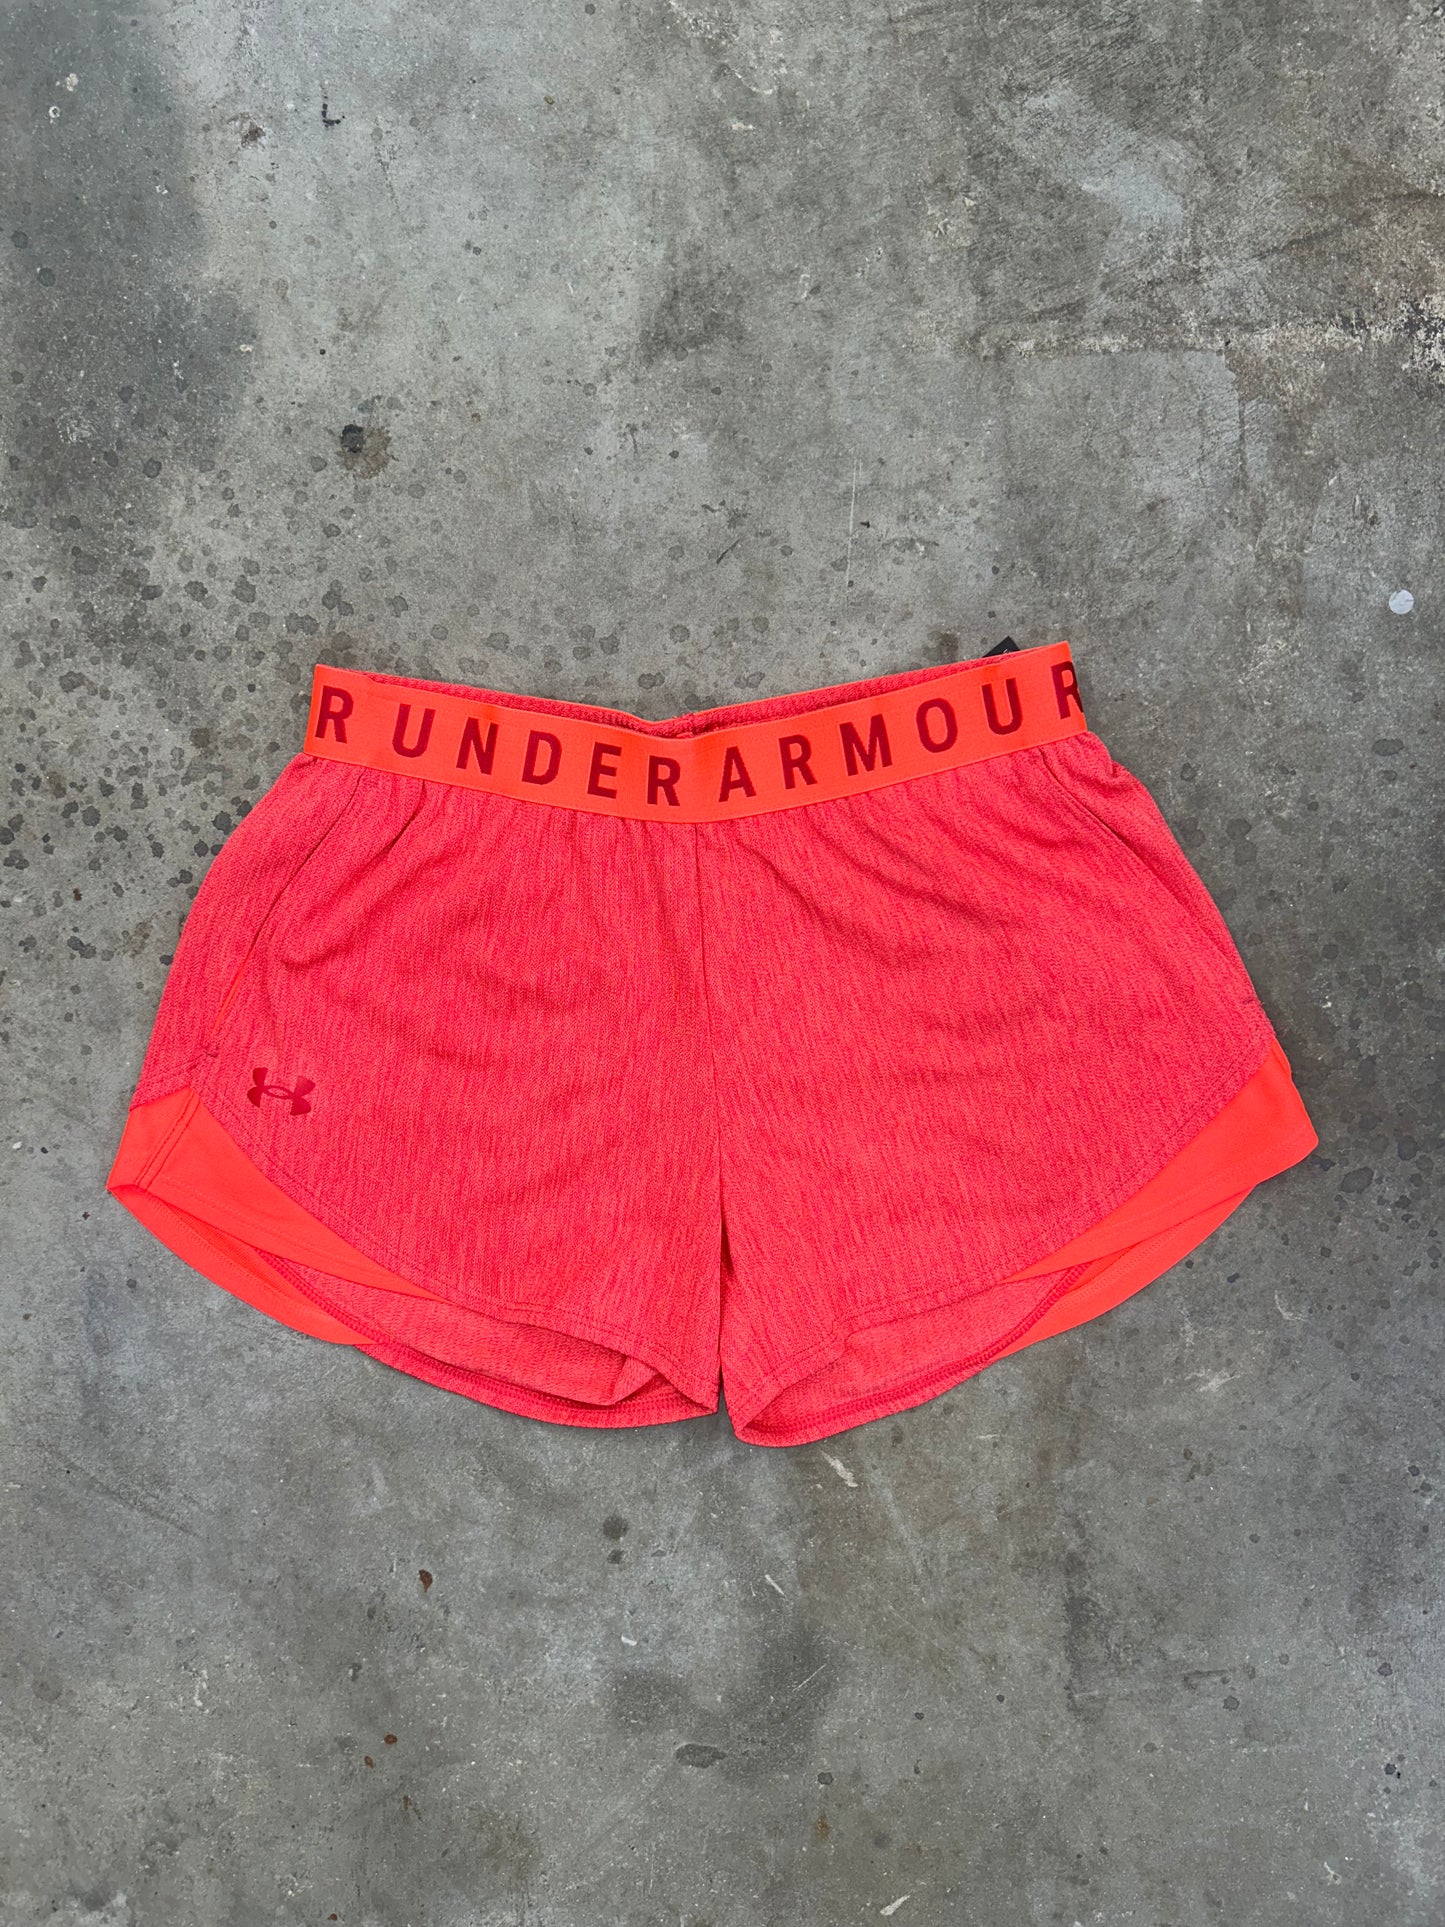 Under Armour Twist Shorts - Burnt Orange